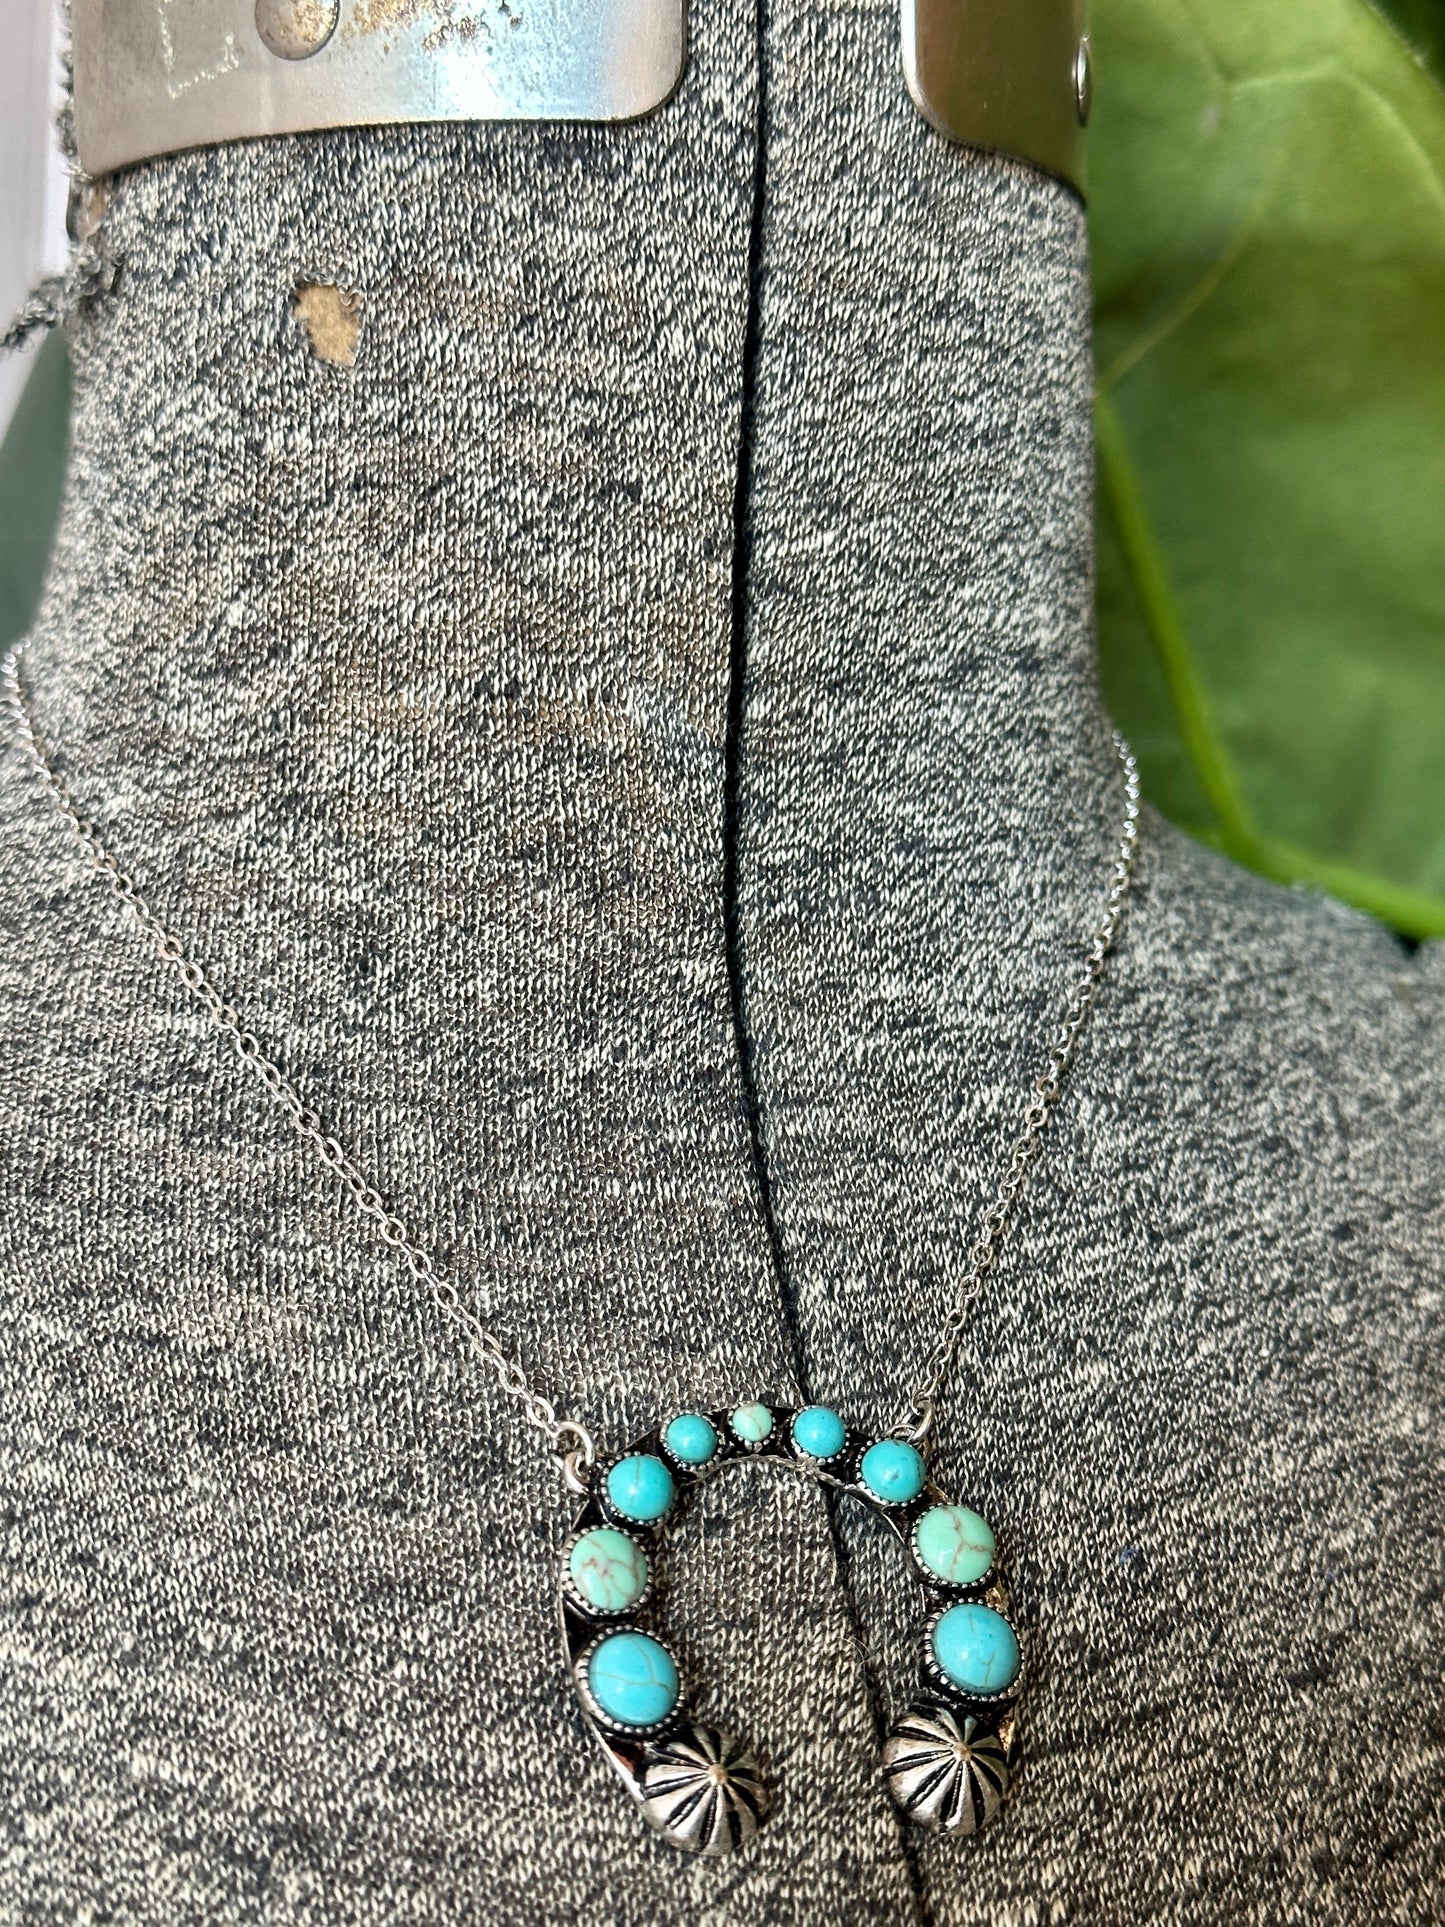 Turquoise Squash Necklaces